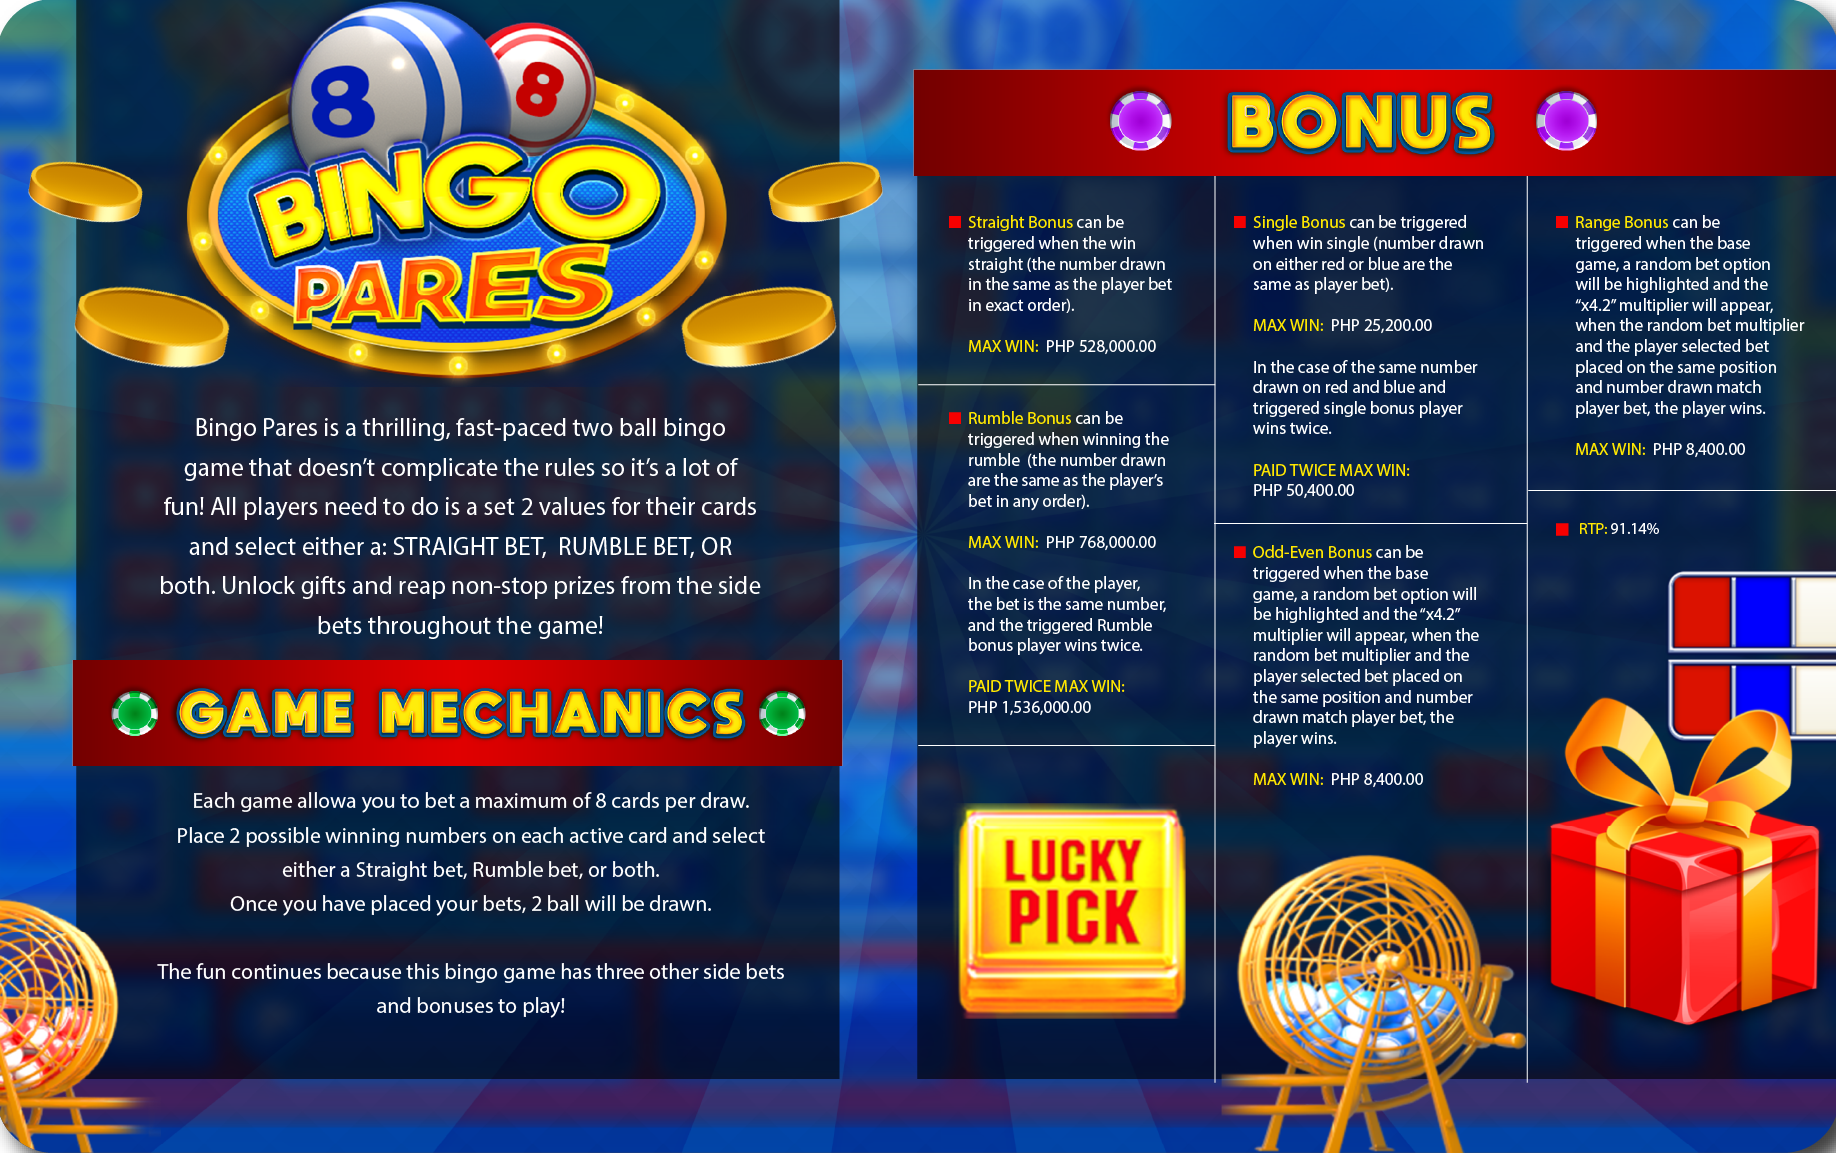 https://dynastygaming.com/e-bingo-games/bingo-pares/